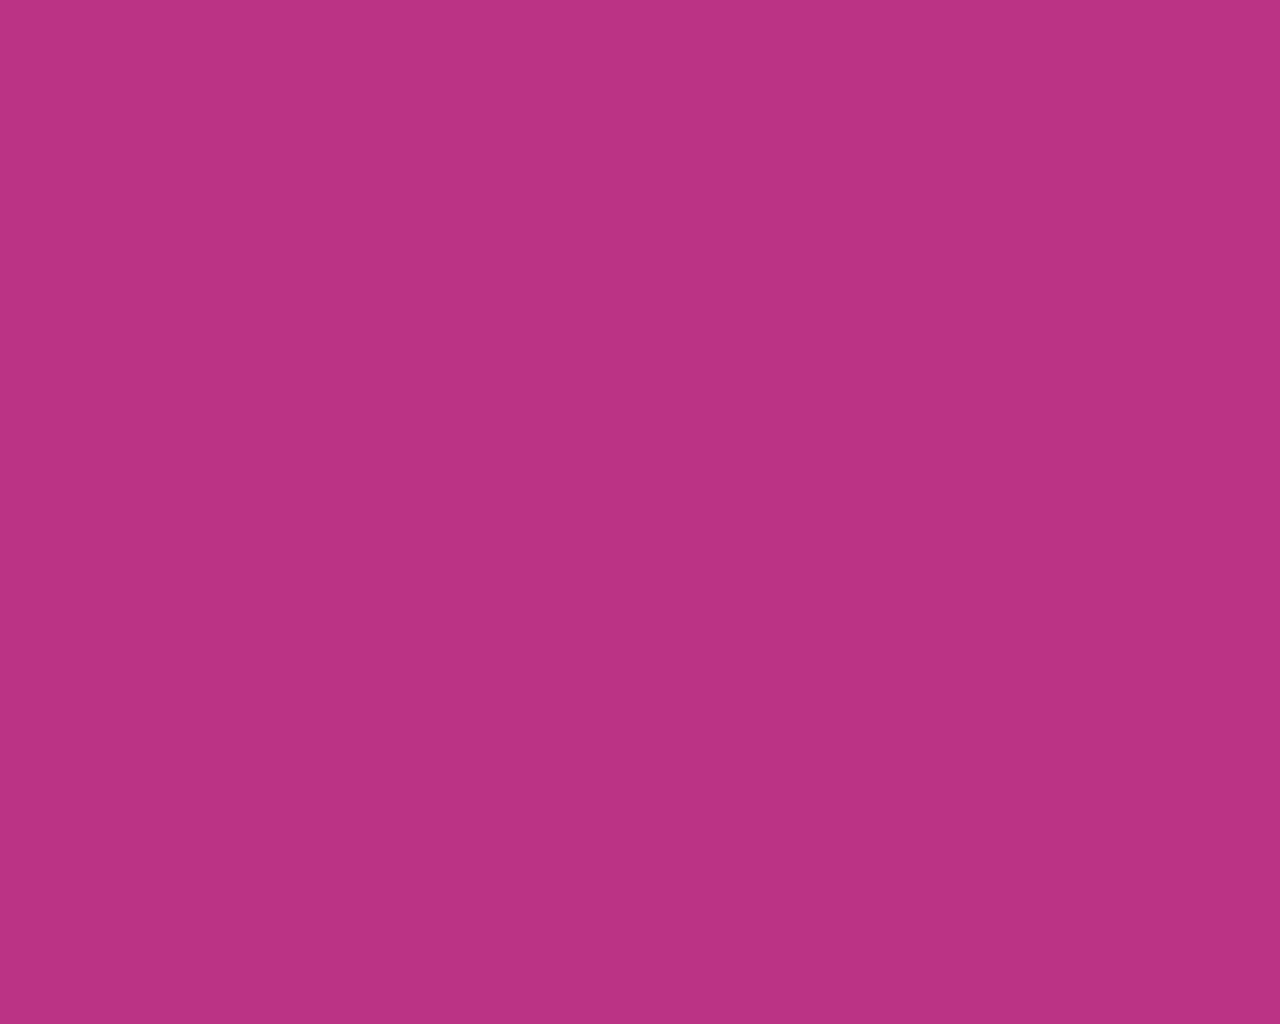 1280x1024 Medium Red-violet Solid Color Background